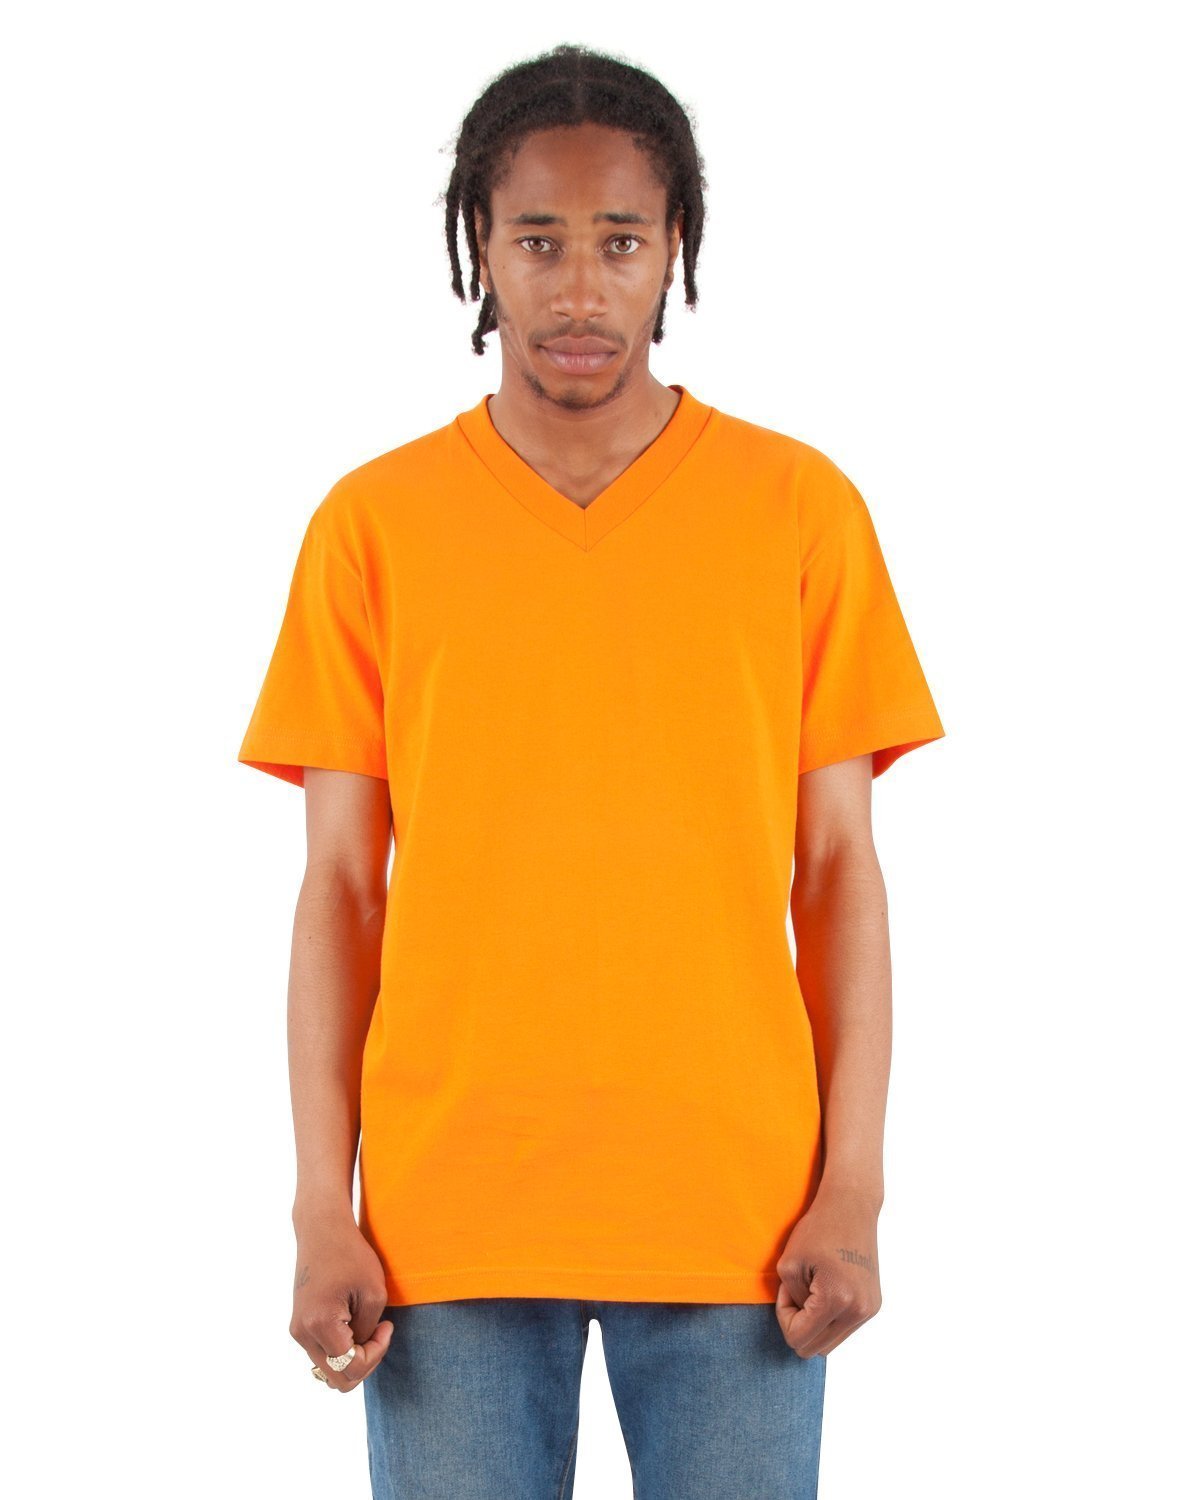 6.2 oz V-Neck - Large Sizes 3XL / Orange